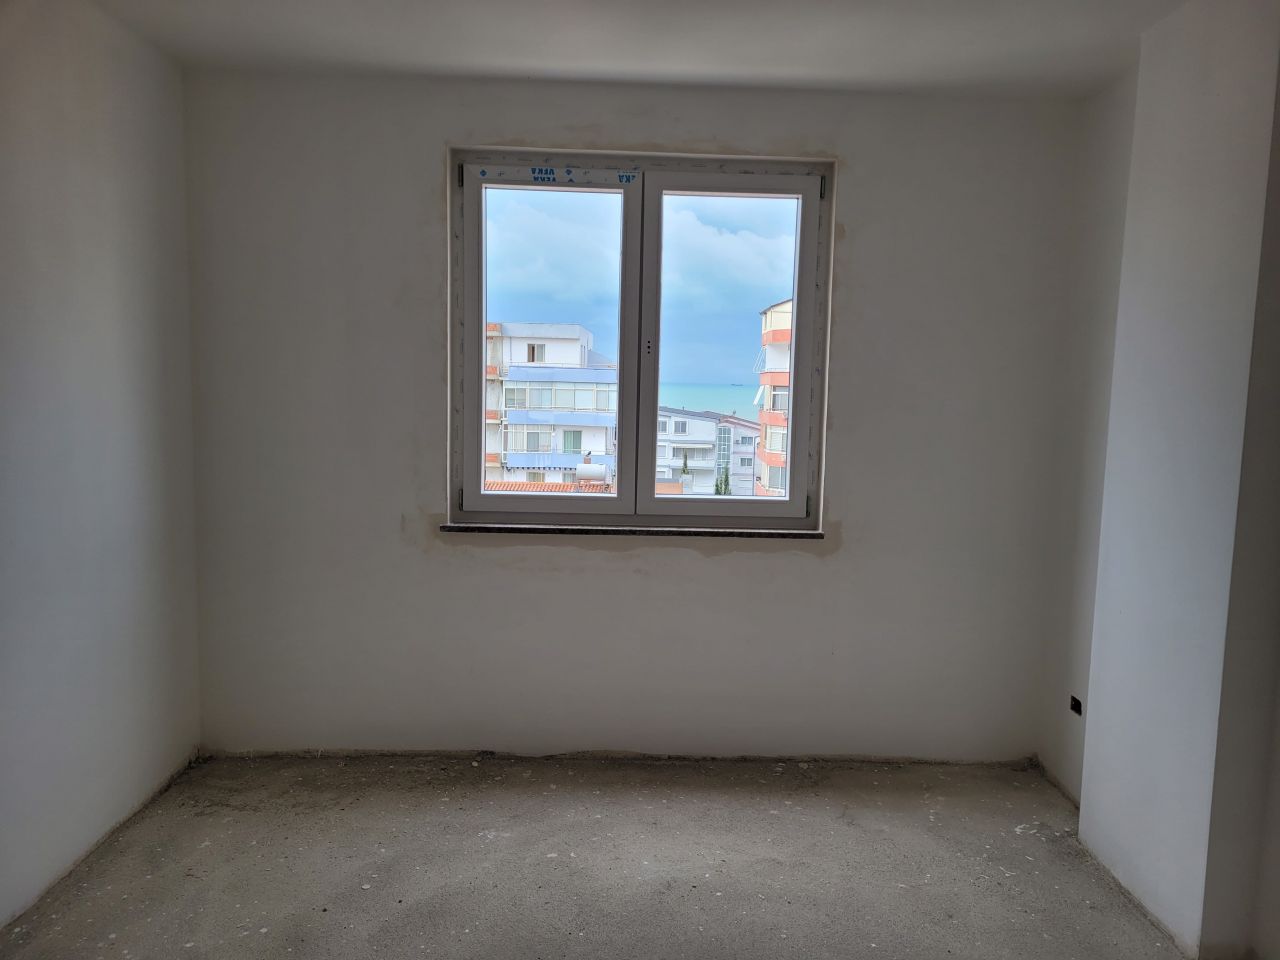 Wohnung Zum Verkauf In Golem Durres Albanien, In Einer Ruhigen Gegend, Nahe Dem Meer Gelegen